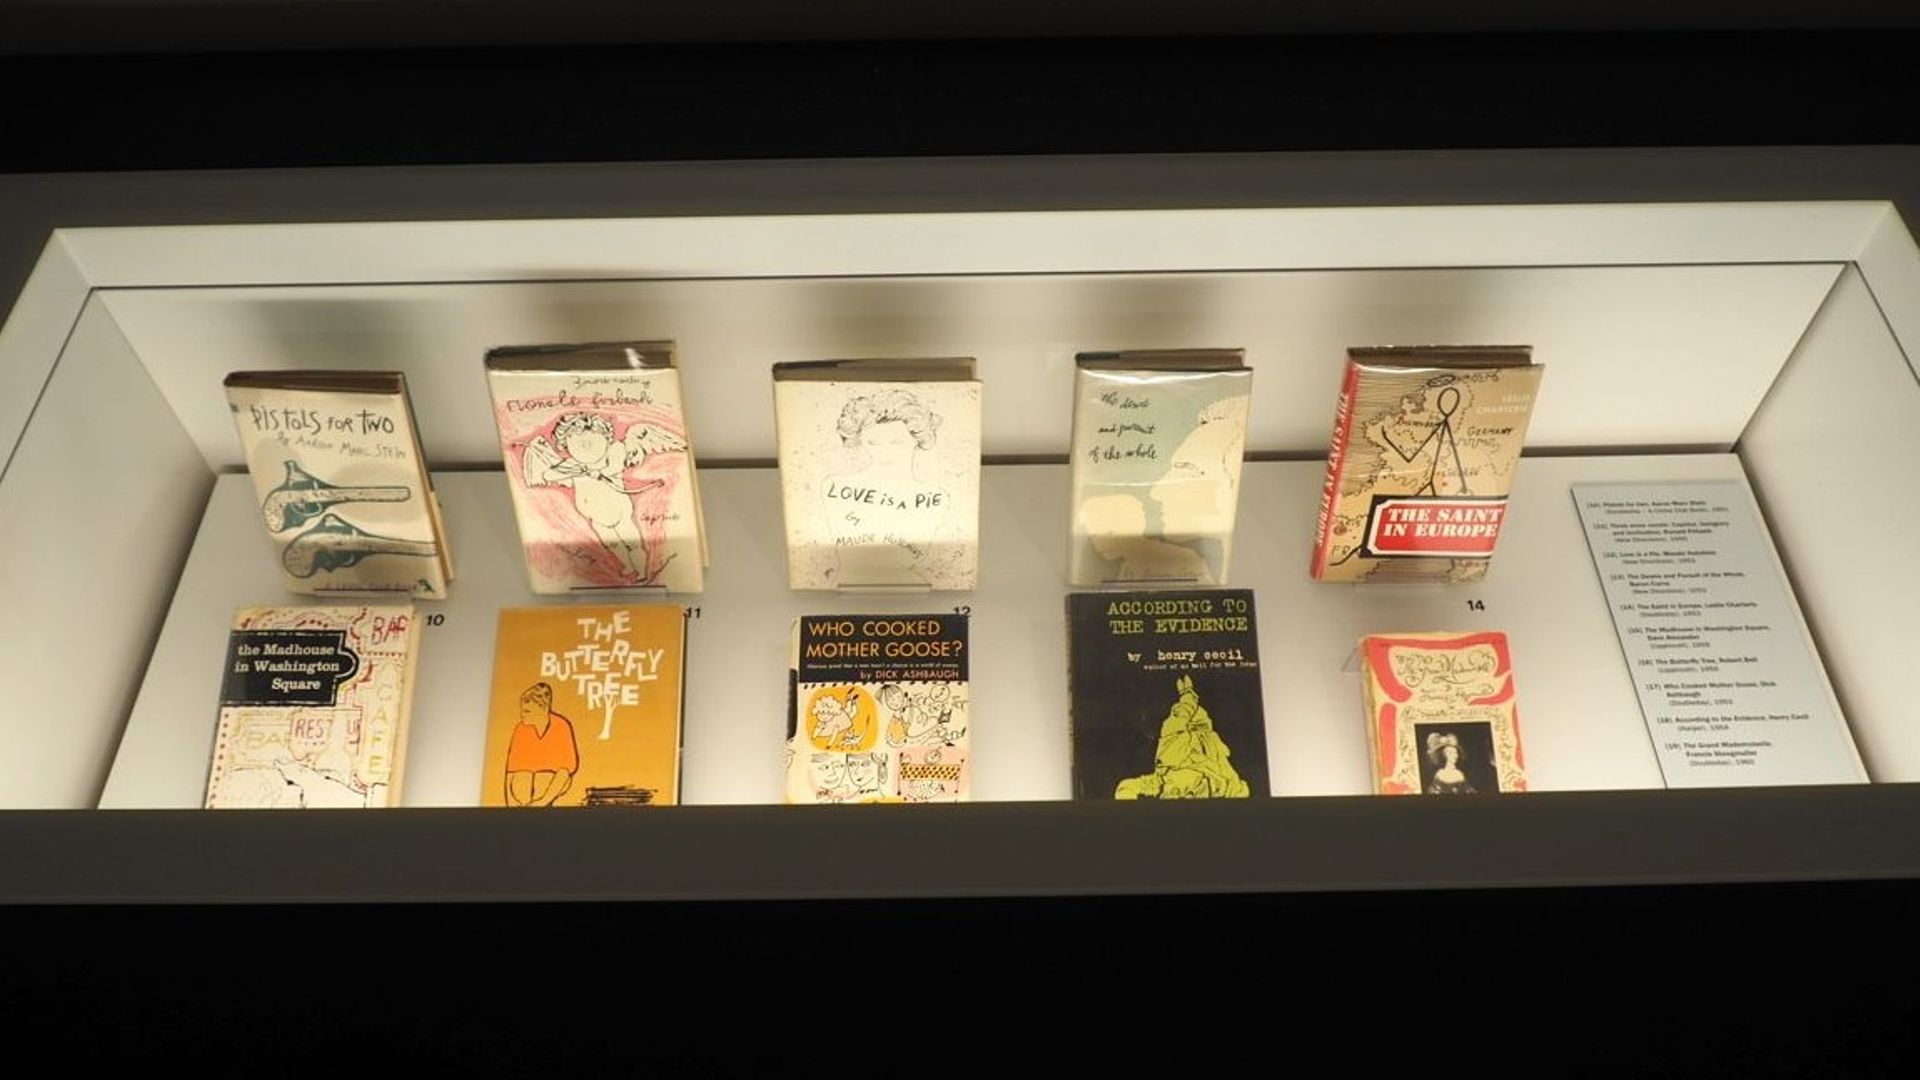 De nombreuses couvertures de livres ont été dessinées par Andy Warhol dans les années 50